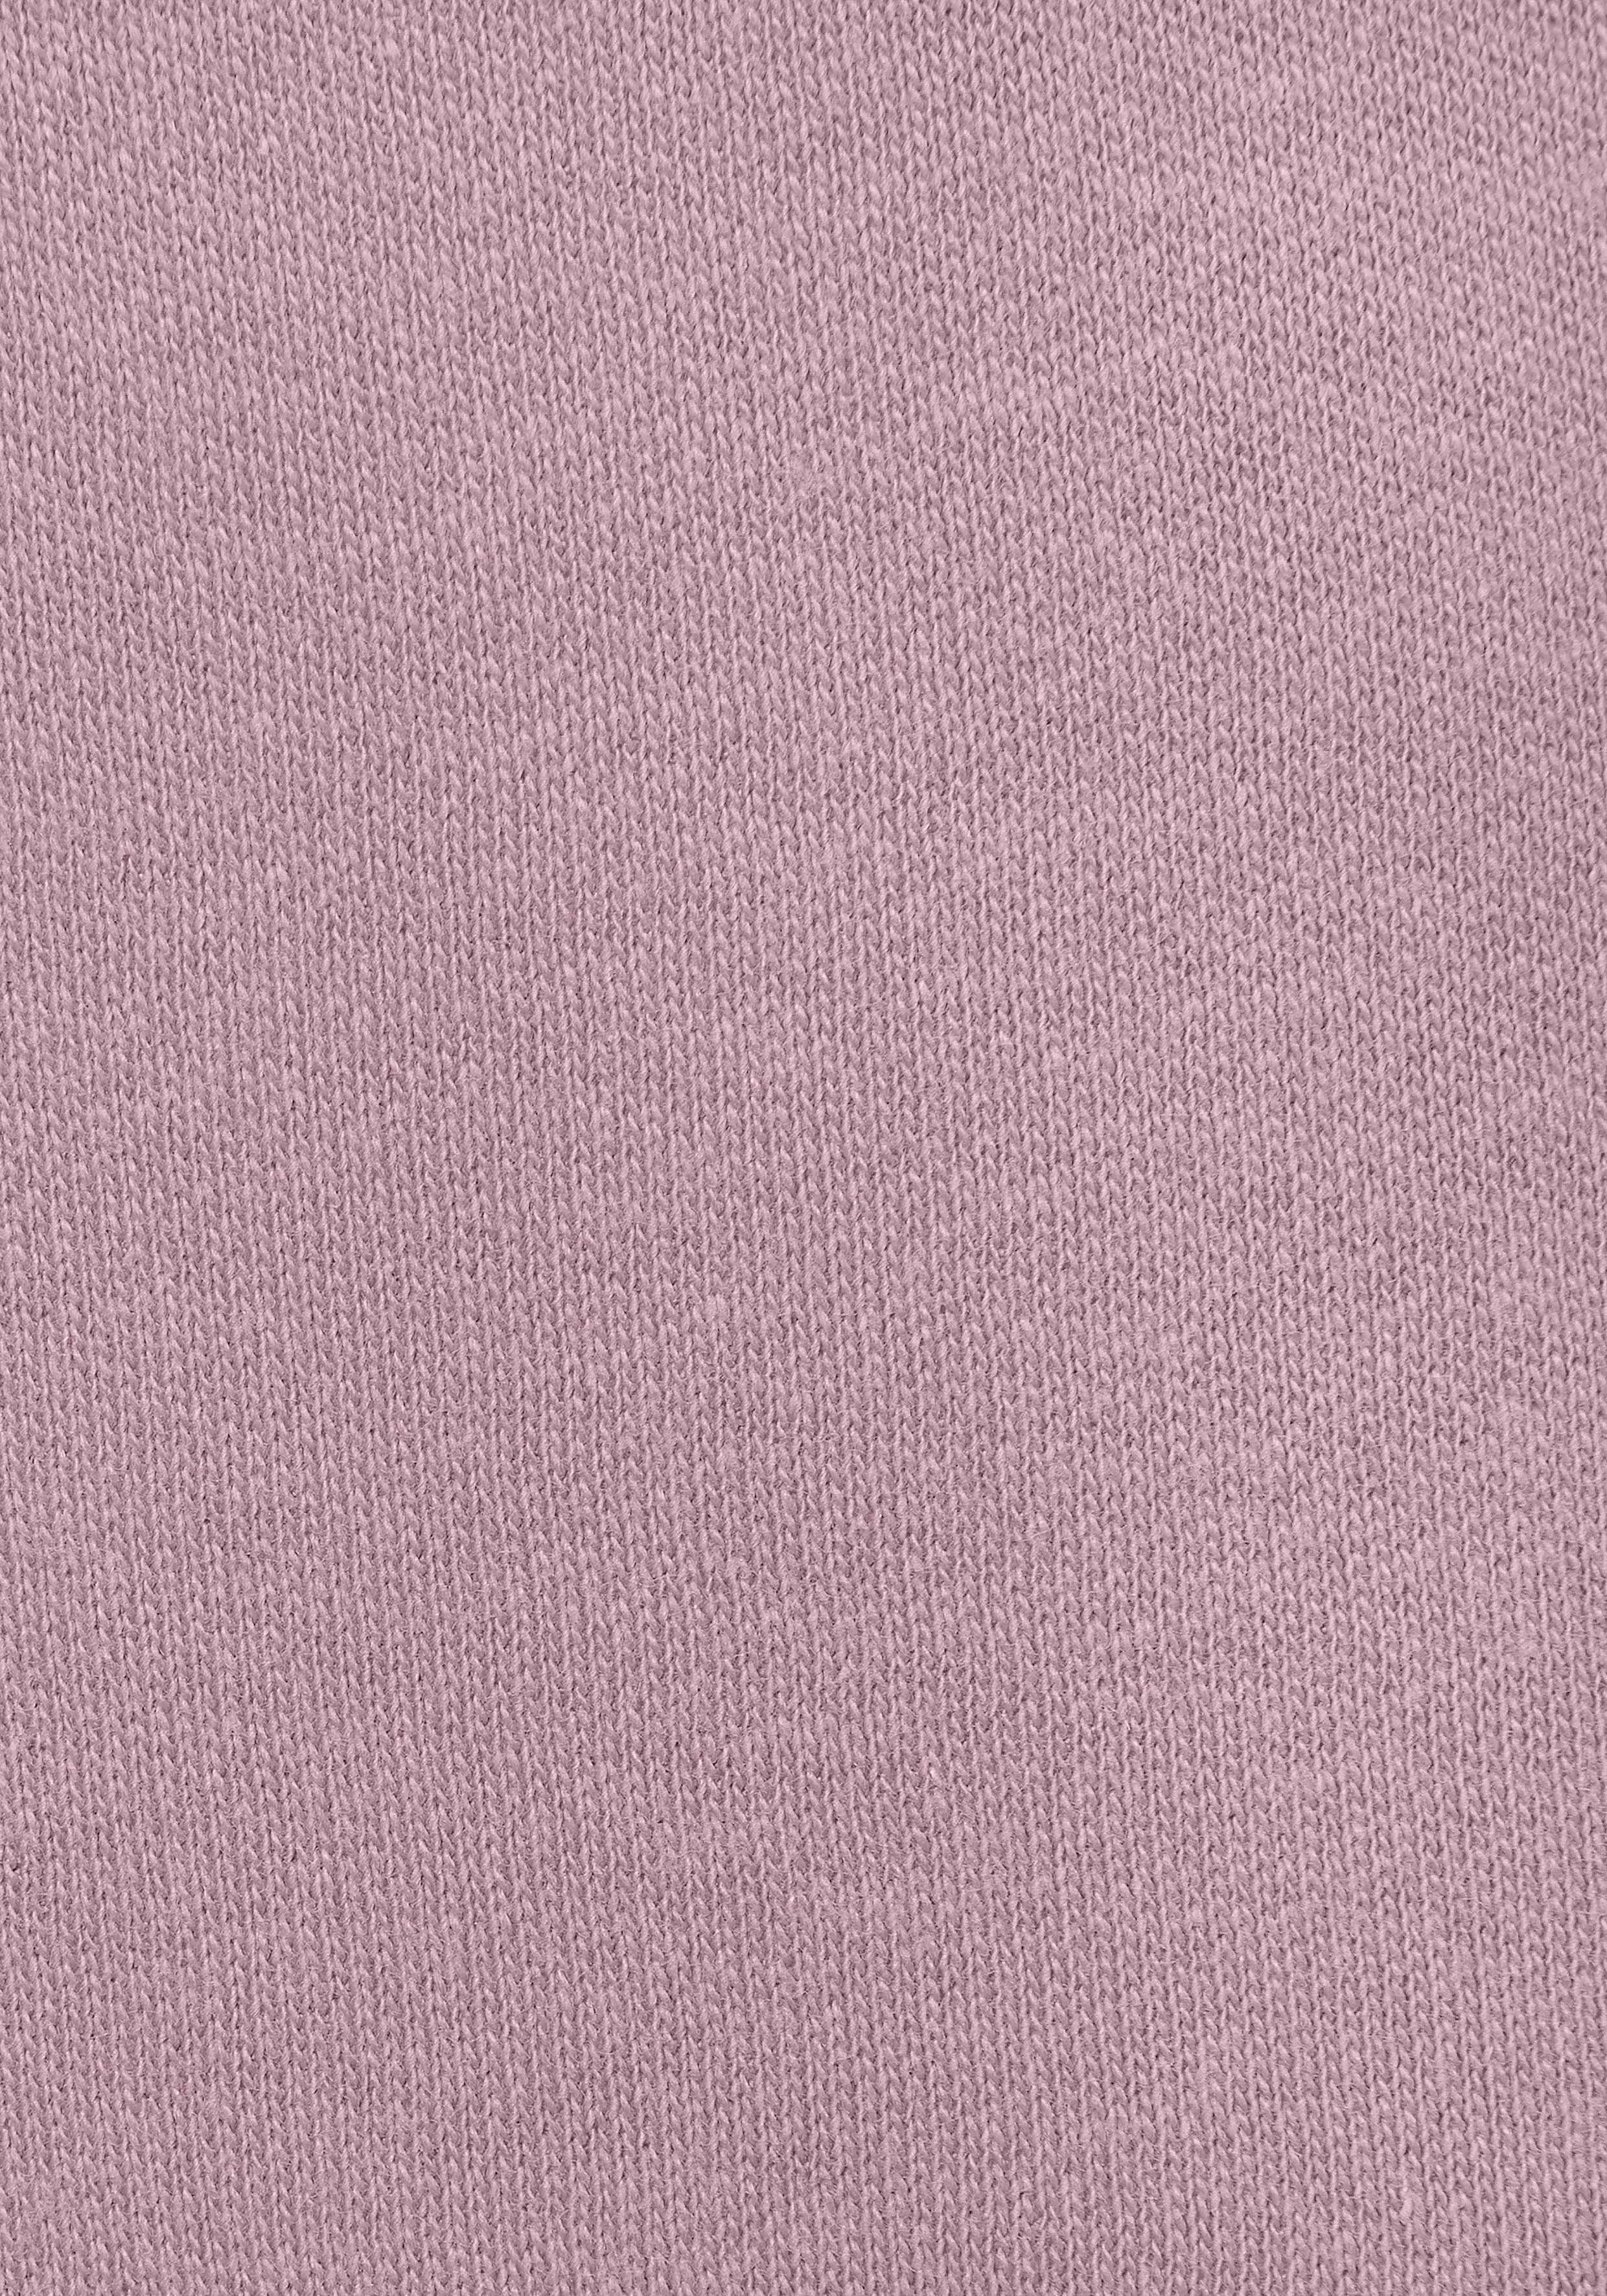 LASCANA ACTIVE Shorts mit kleinen Seitenschlitzen rosa